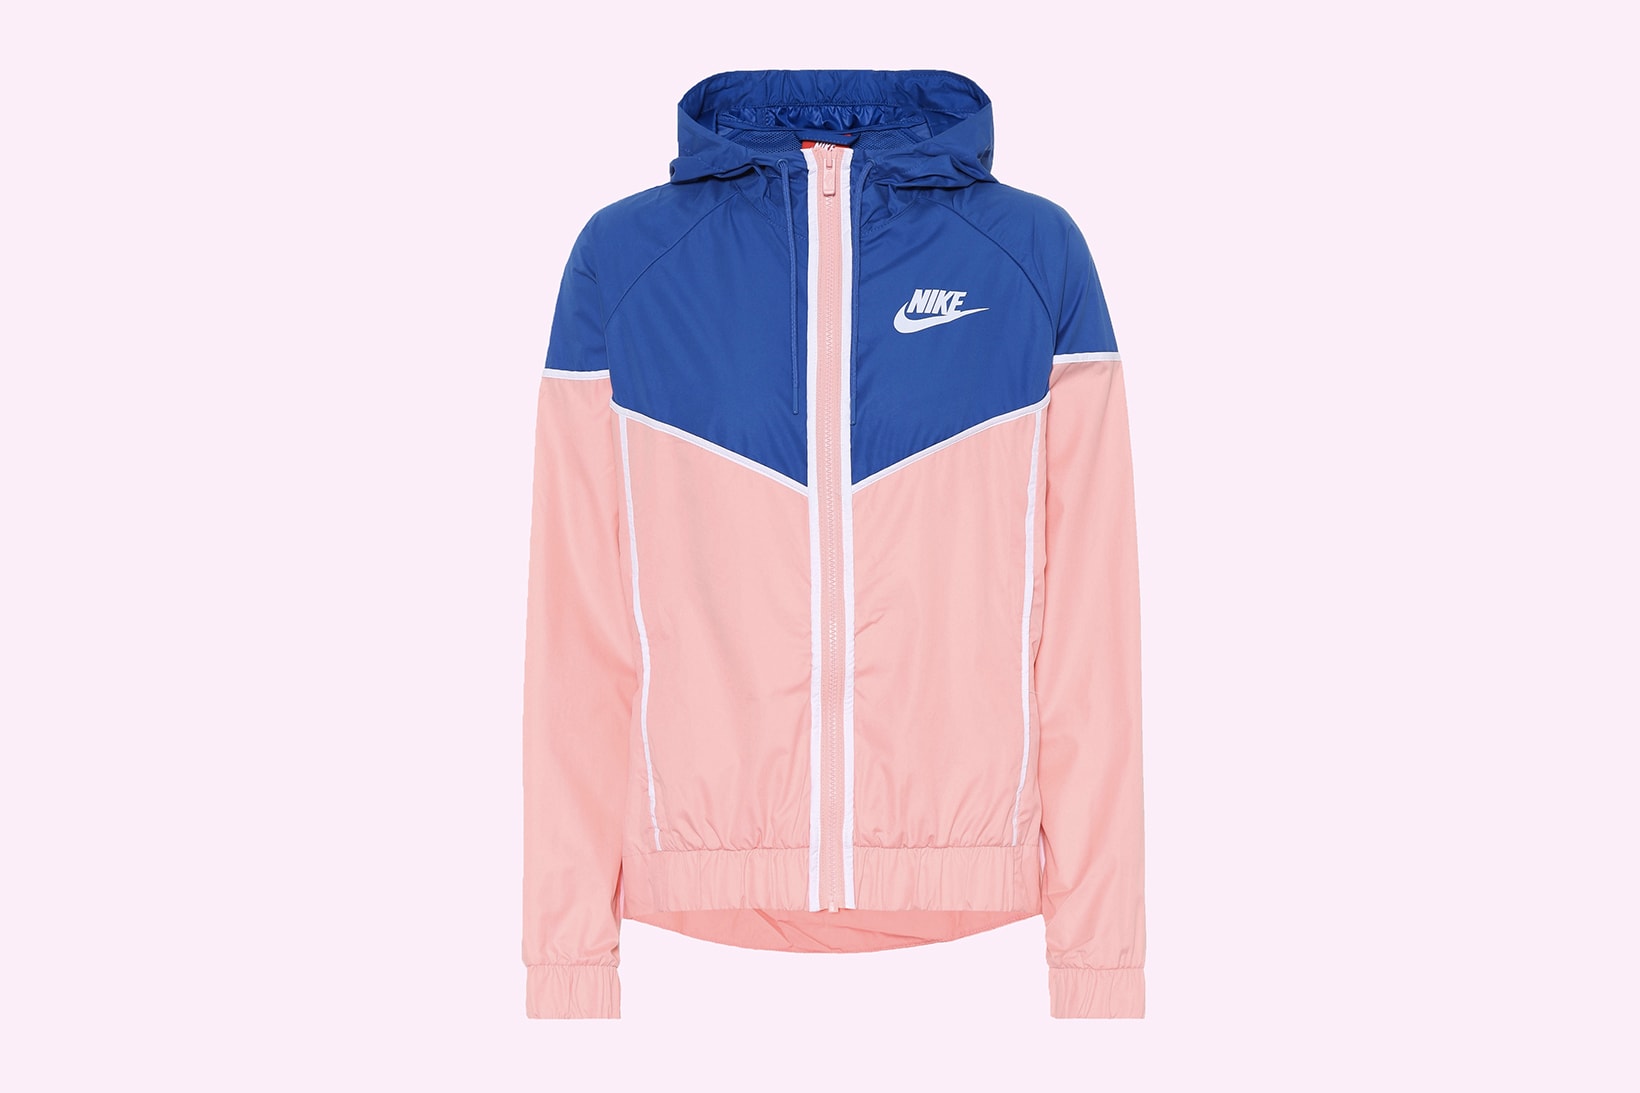 Nike Pastel Pink & Blue Retro Windbreaker Jacket